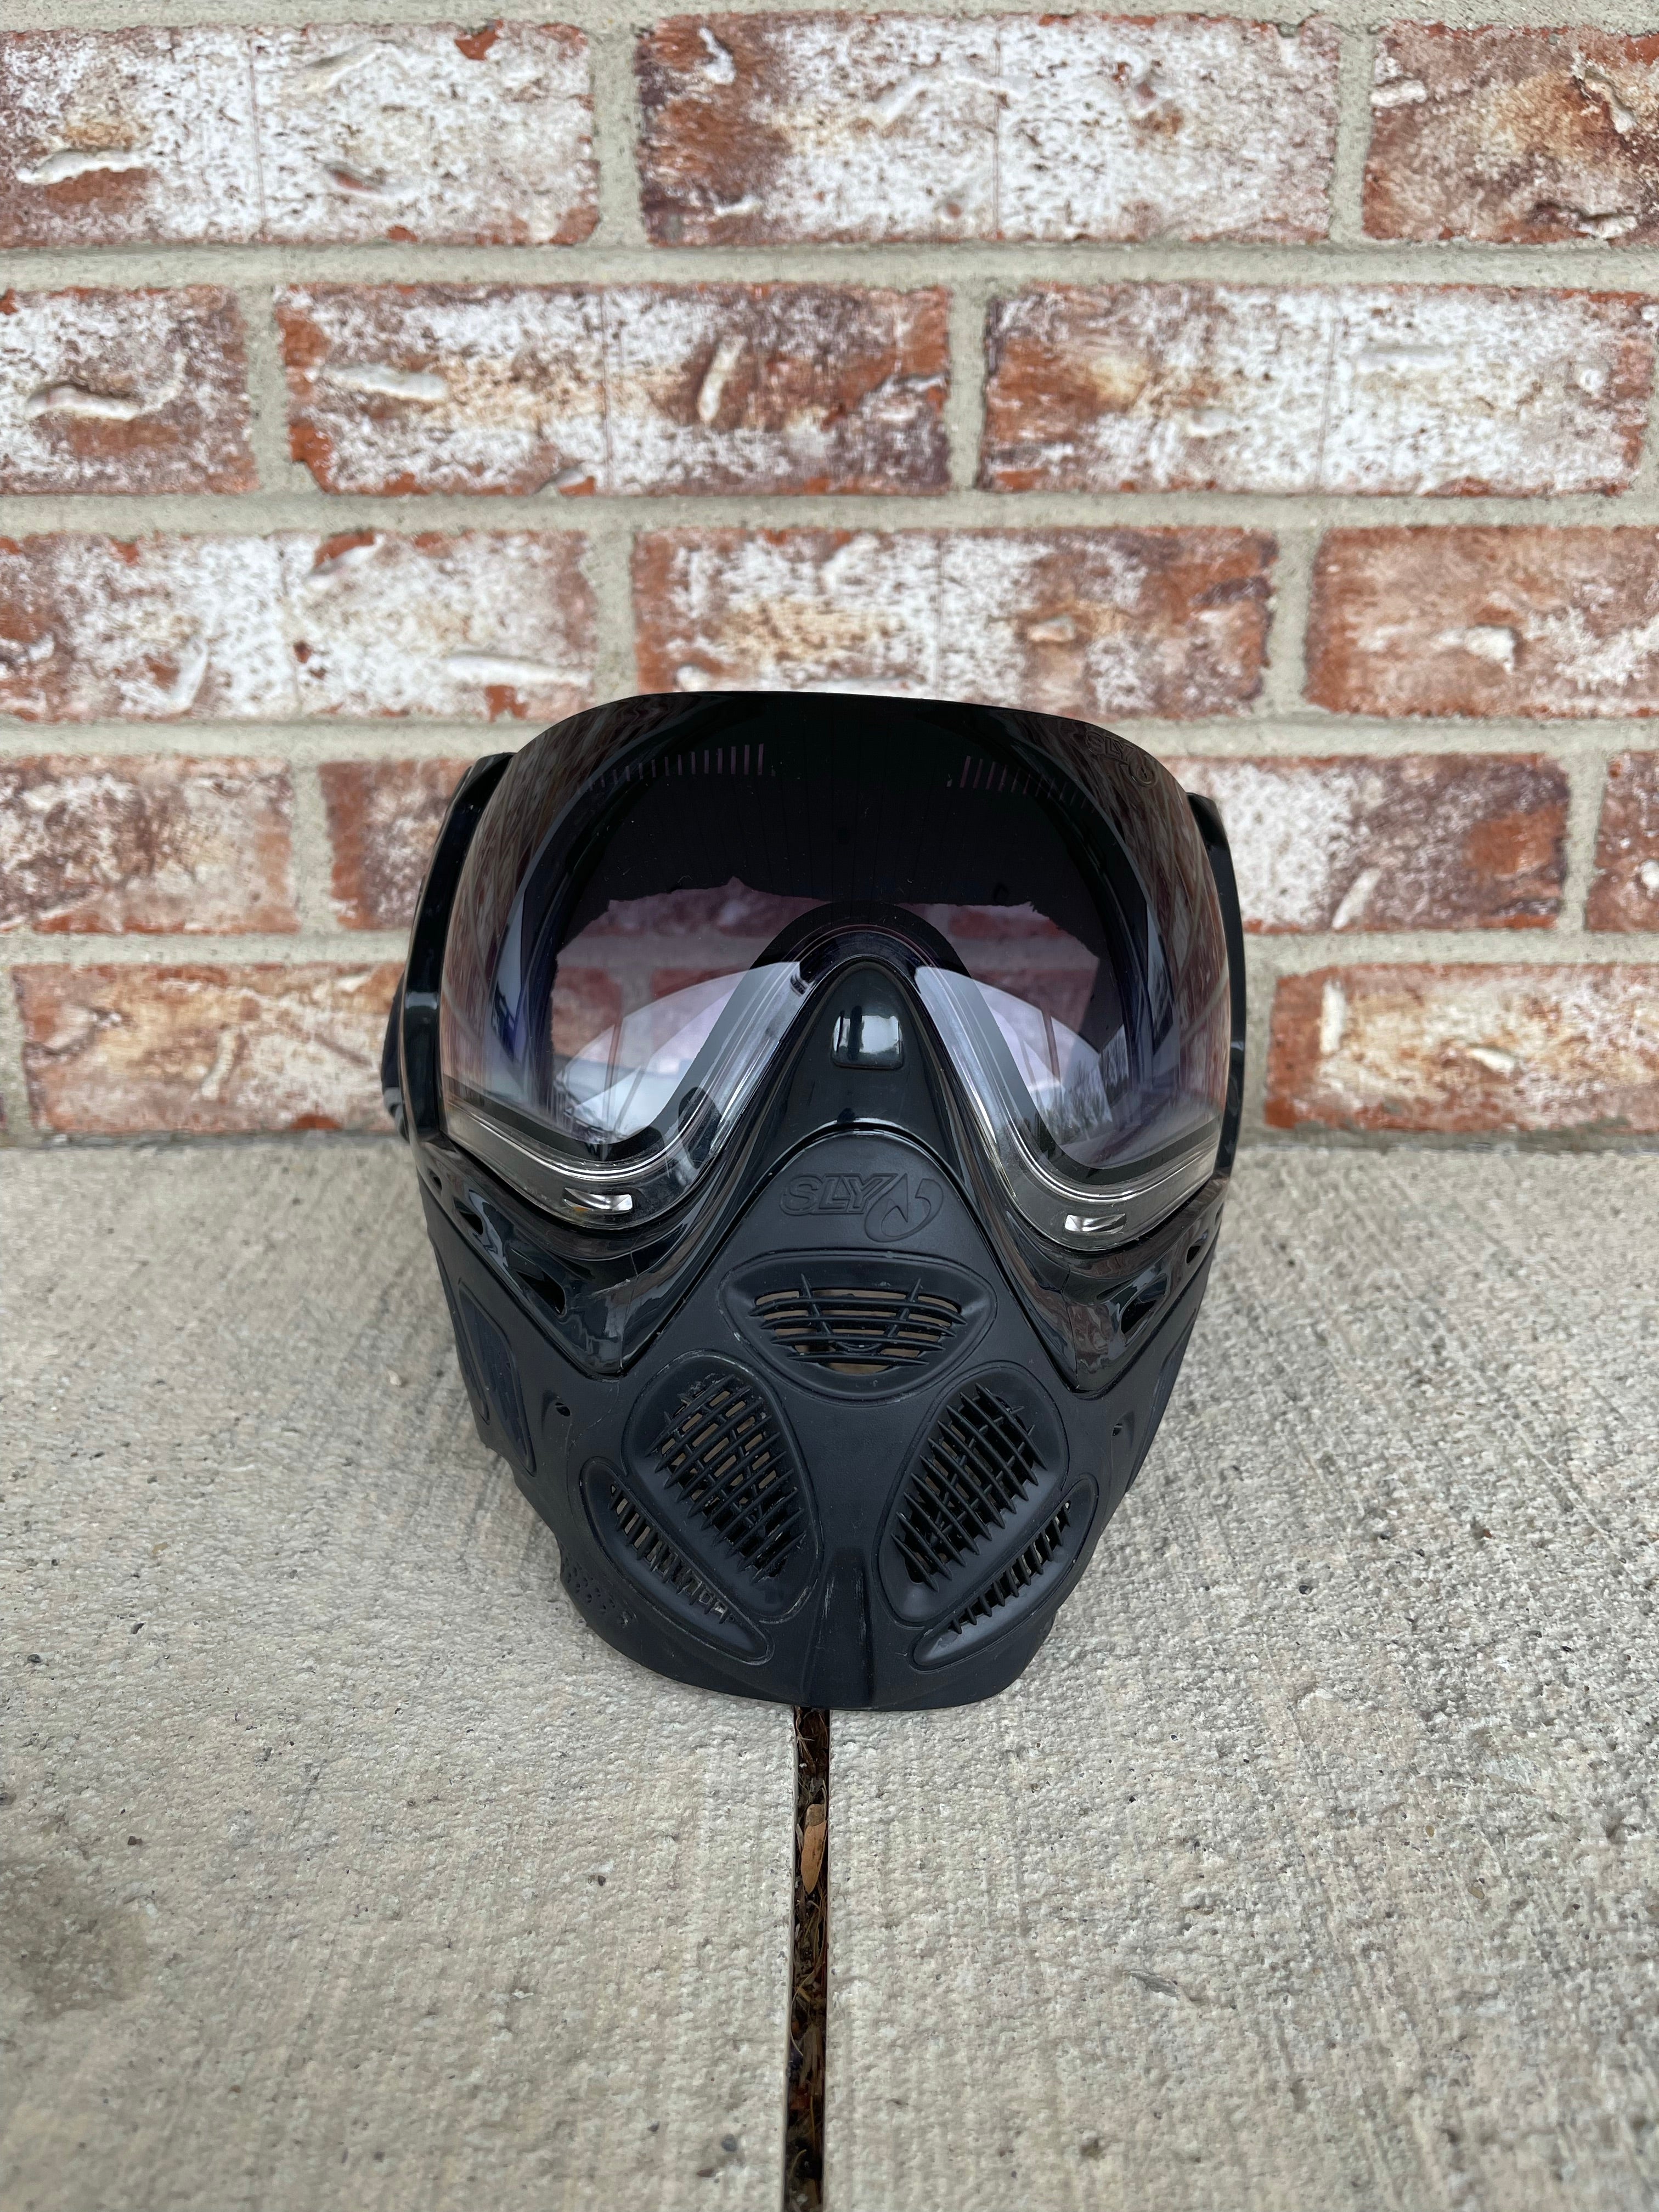 Used Sly Profit Paintball Mask - Black